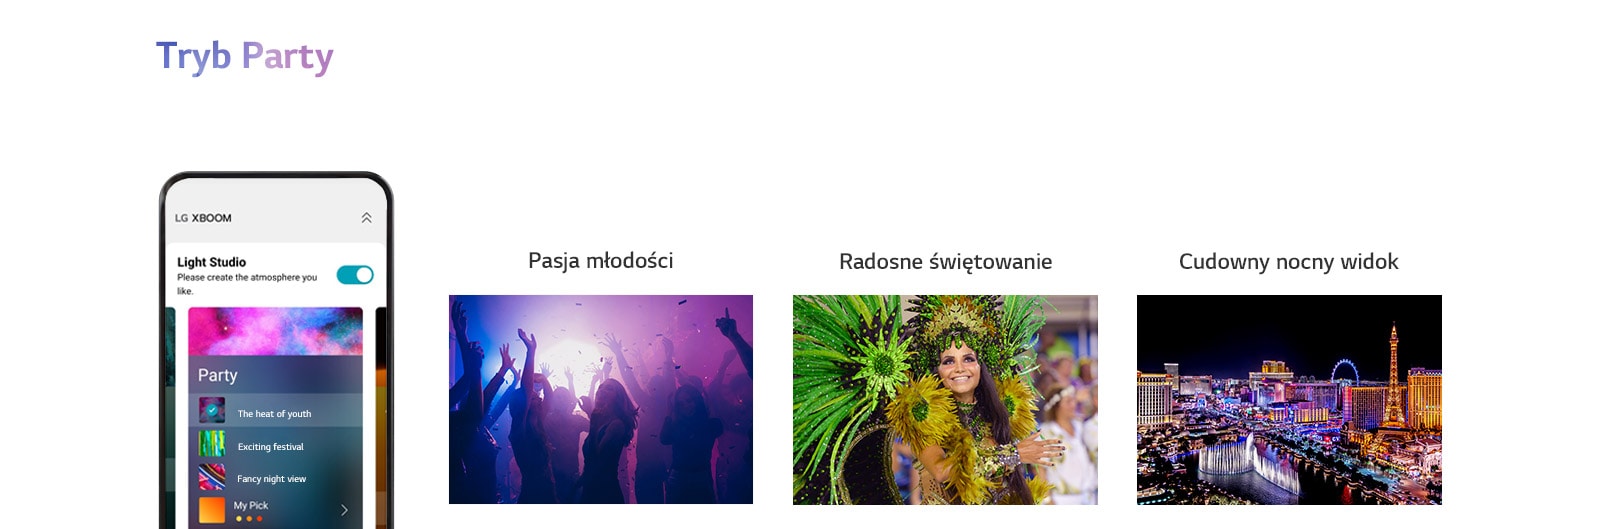 Zdjęcie telefonu komórkowego z widocznym ekranem aplikacji w trybie Party. Sylwetki ludzi tańczących w klubach. Zdjęcie kobiety w kolorowym imprezowym stroju. Nocny widok miasta z neonowymi kolorami.